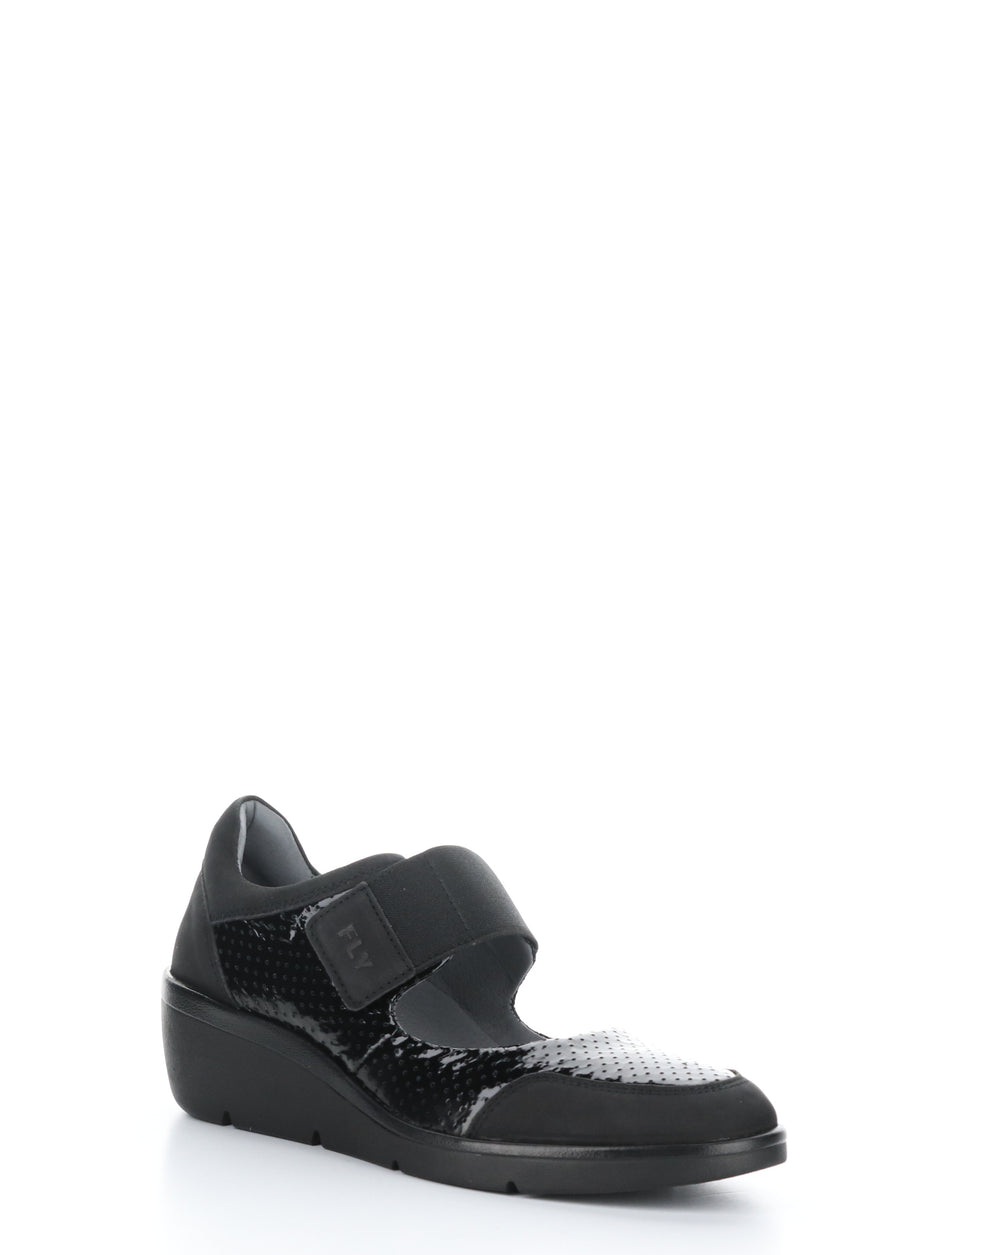 NAJE583FLY 000 BLACK Velcro Shoes